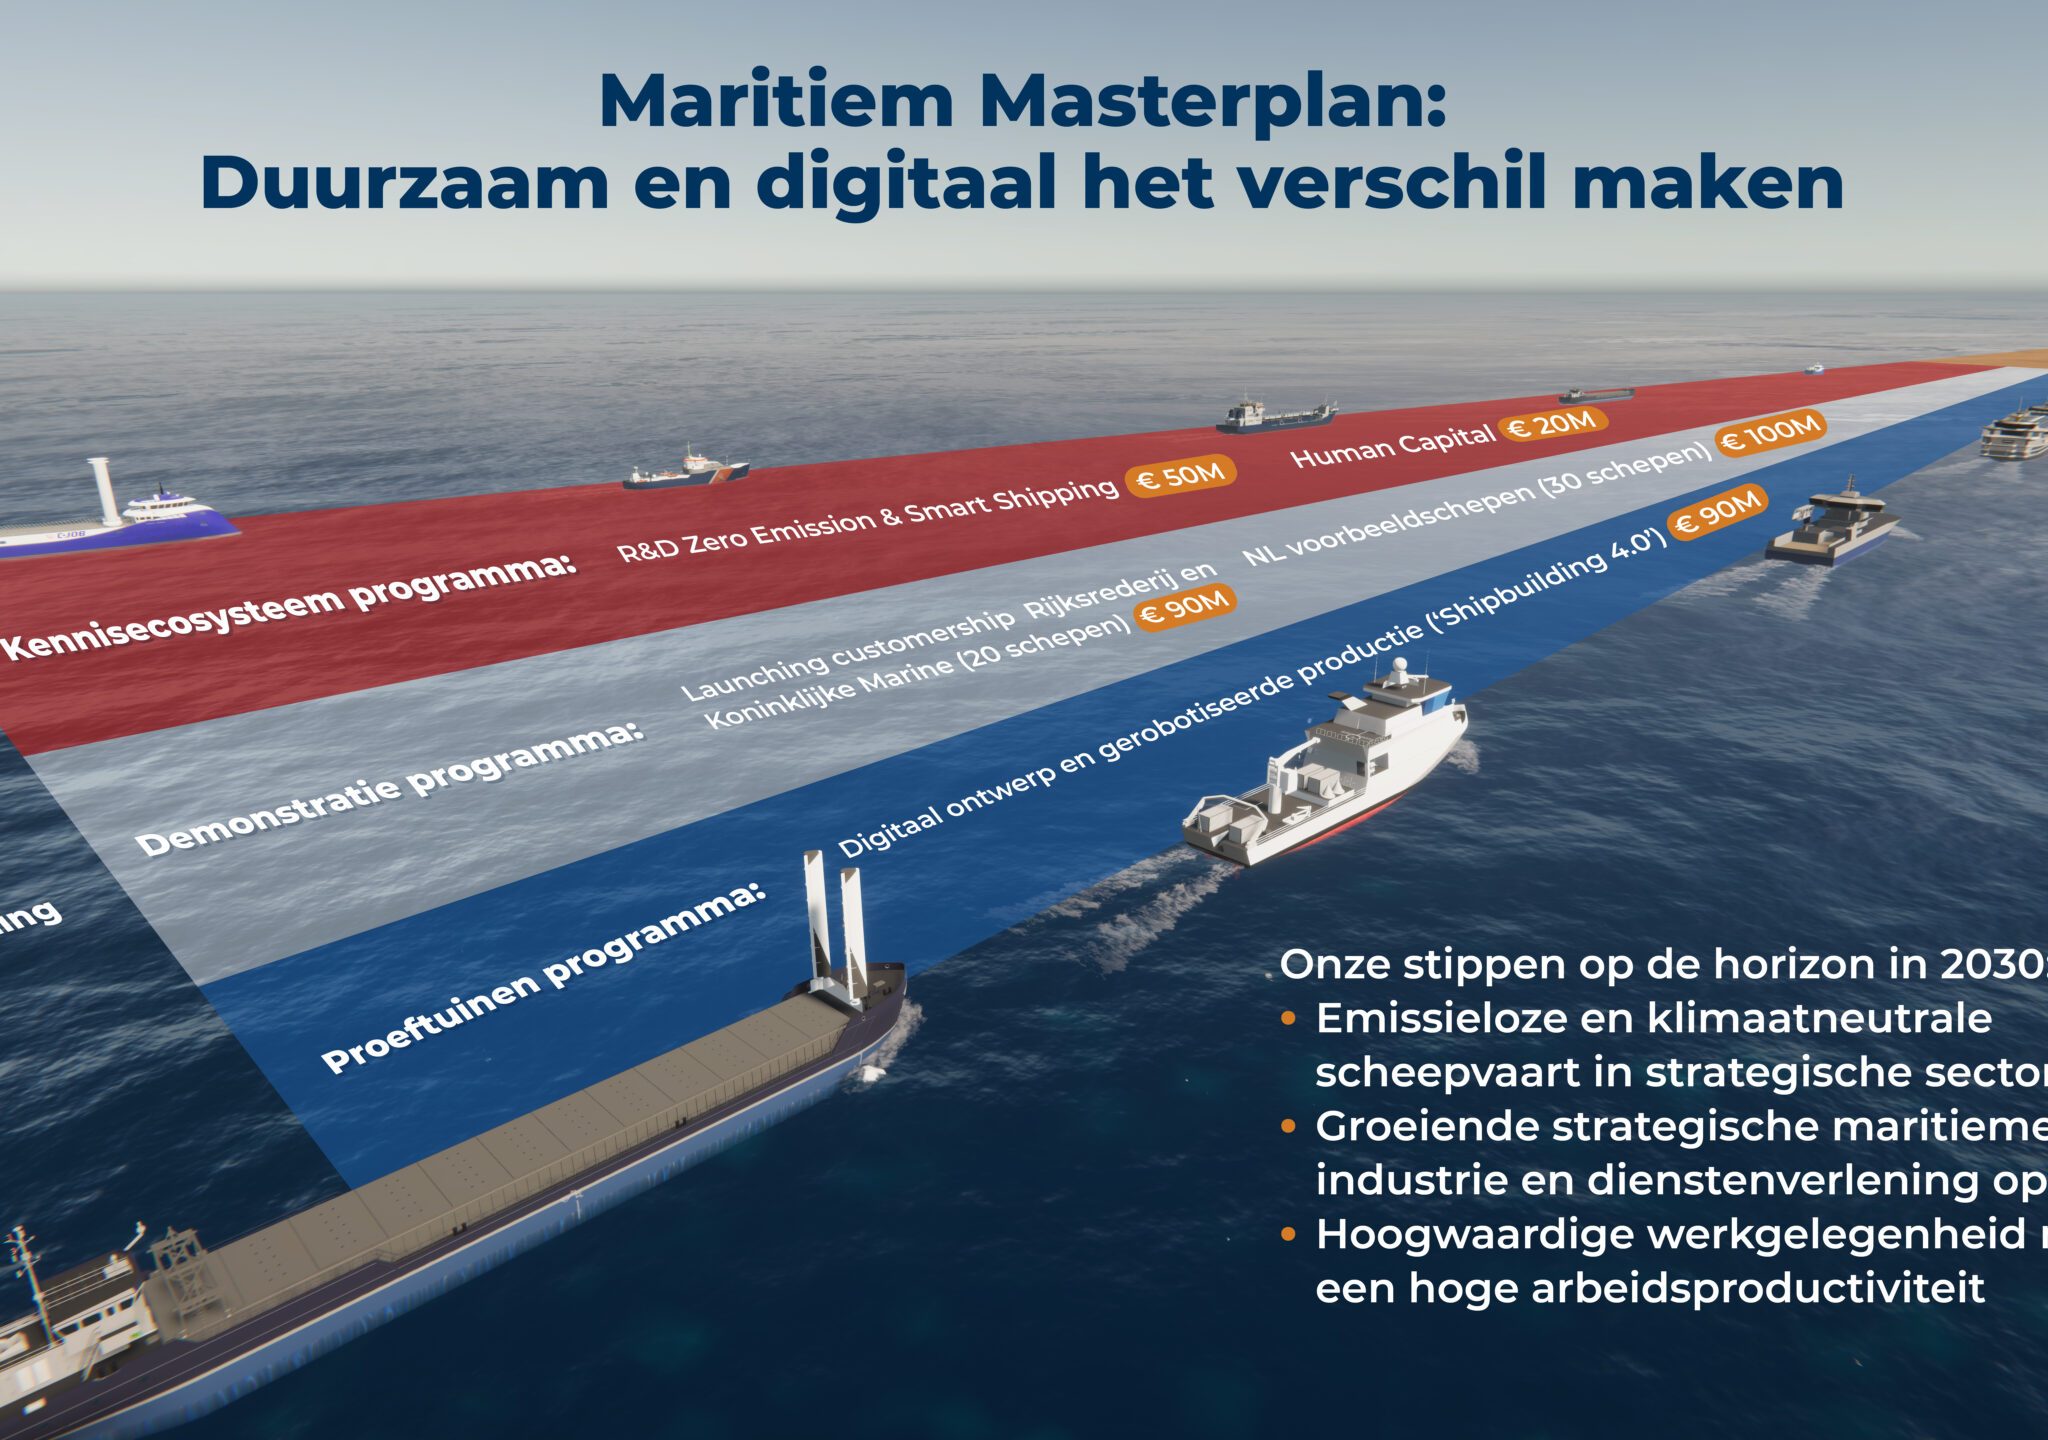 Volgens NMT is deze toekenning een belangrijke eerste stap in de realisatie van het maritieme masterplan. (Foto NMT)